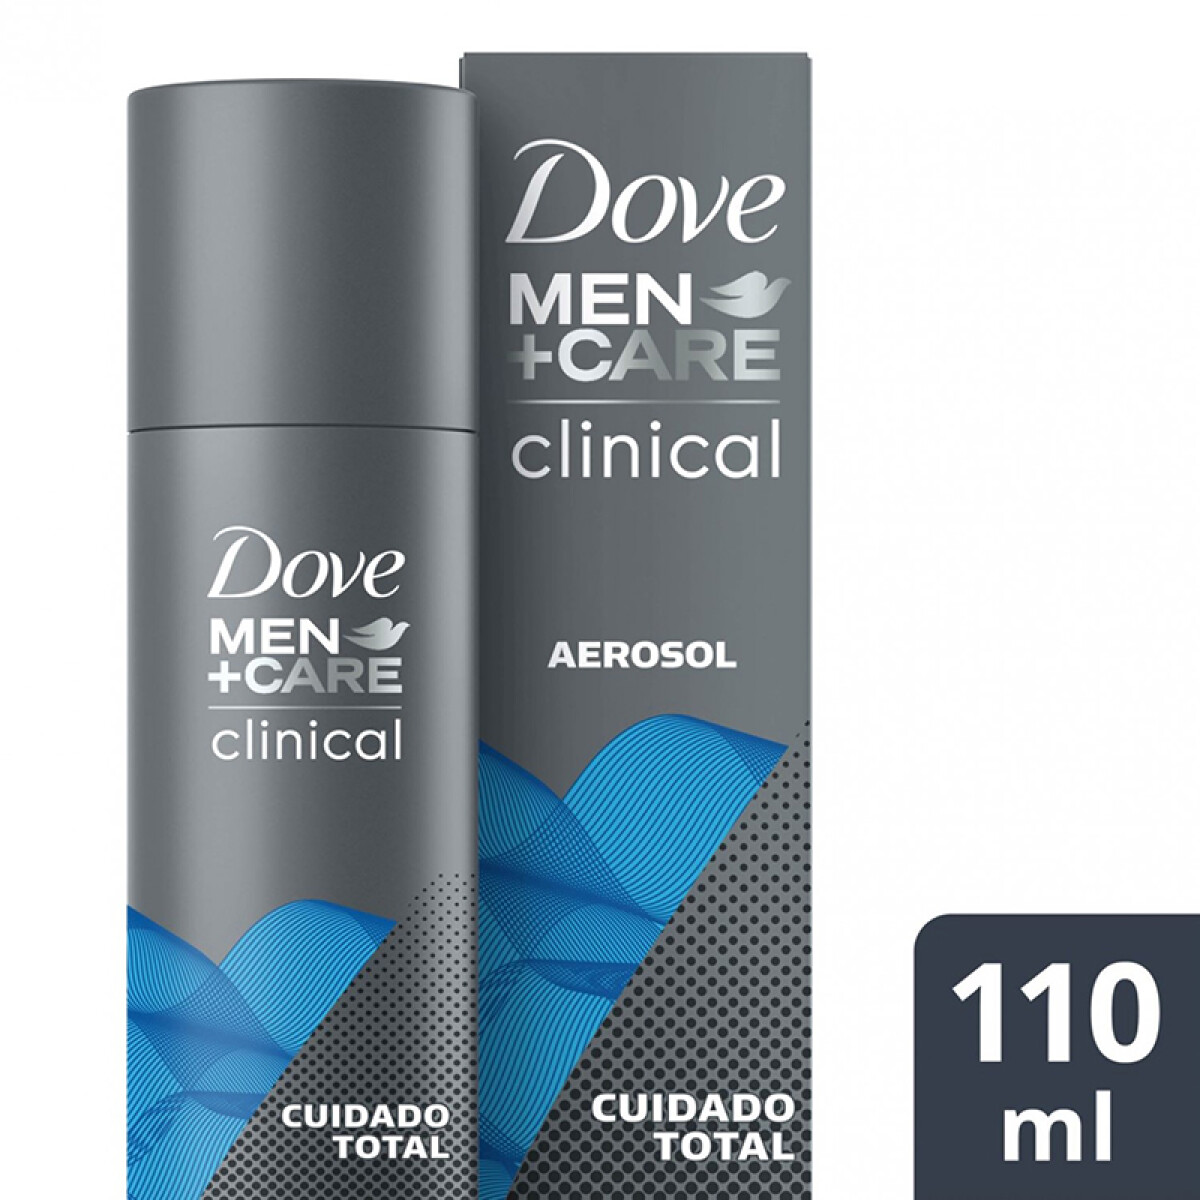 Dove Clinical antitranspirante - Aerosol masculino 